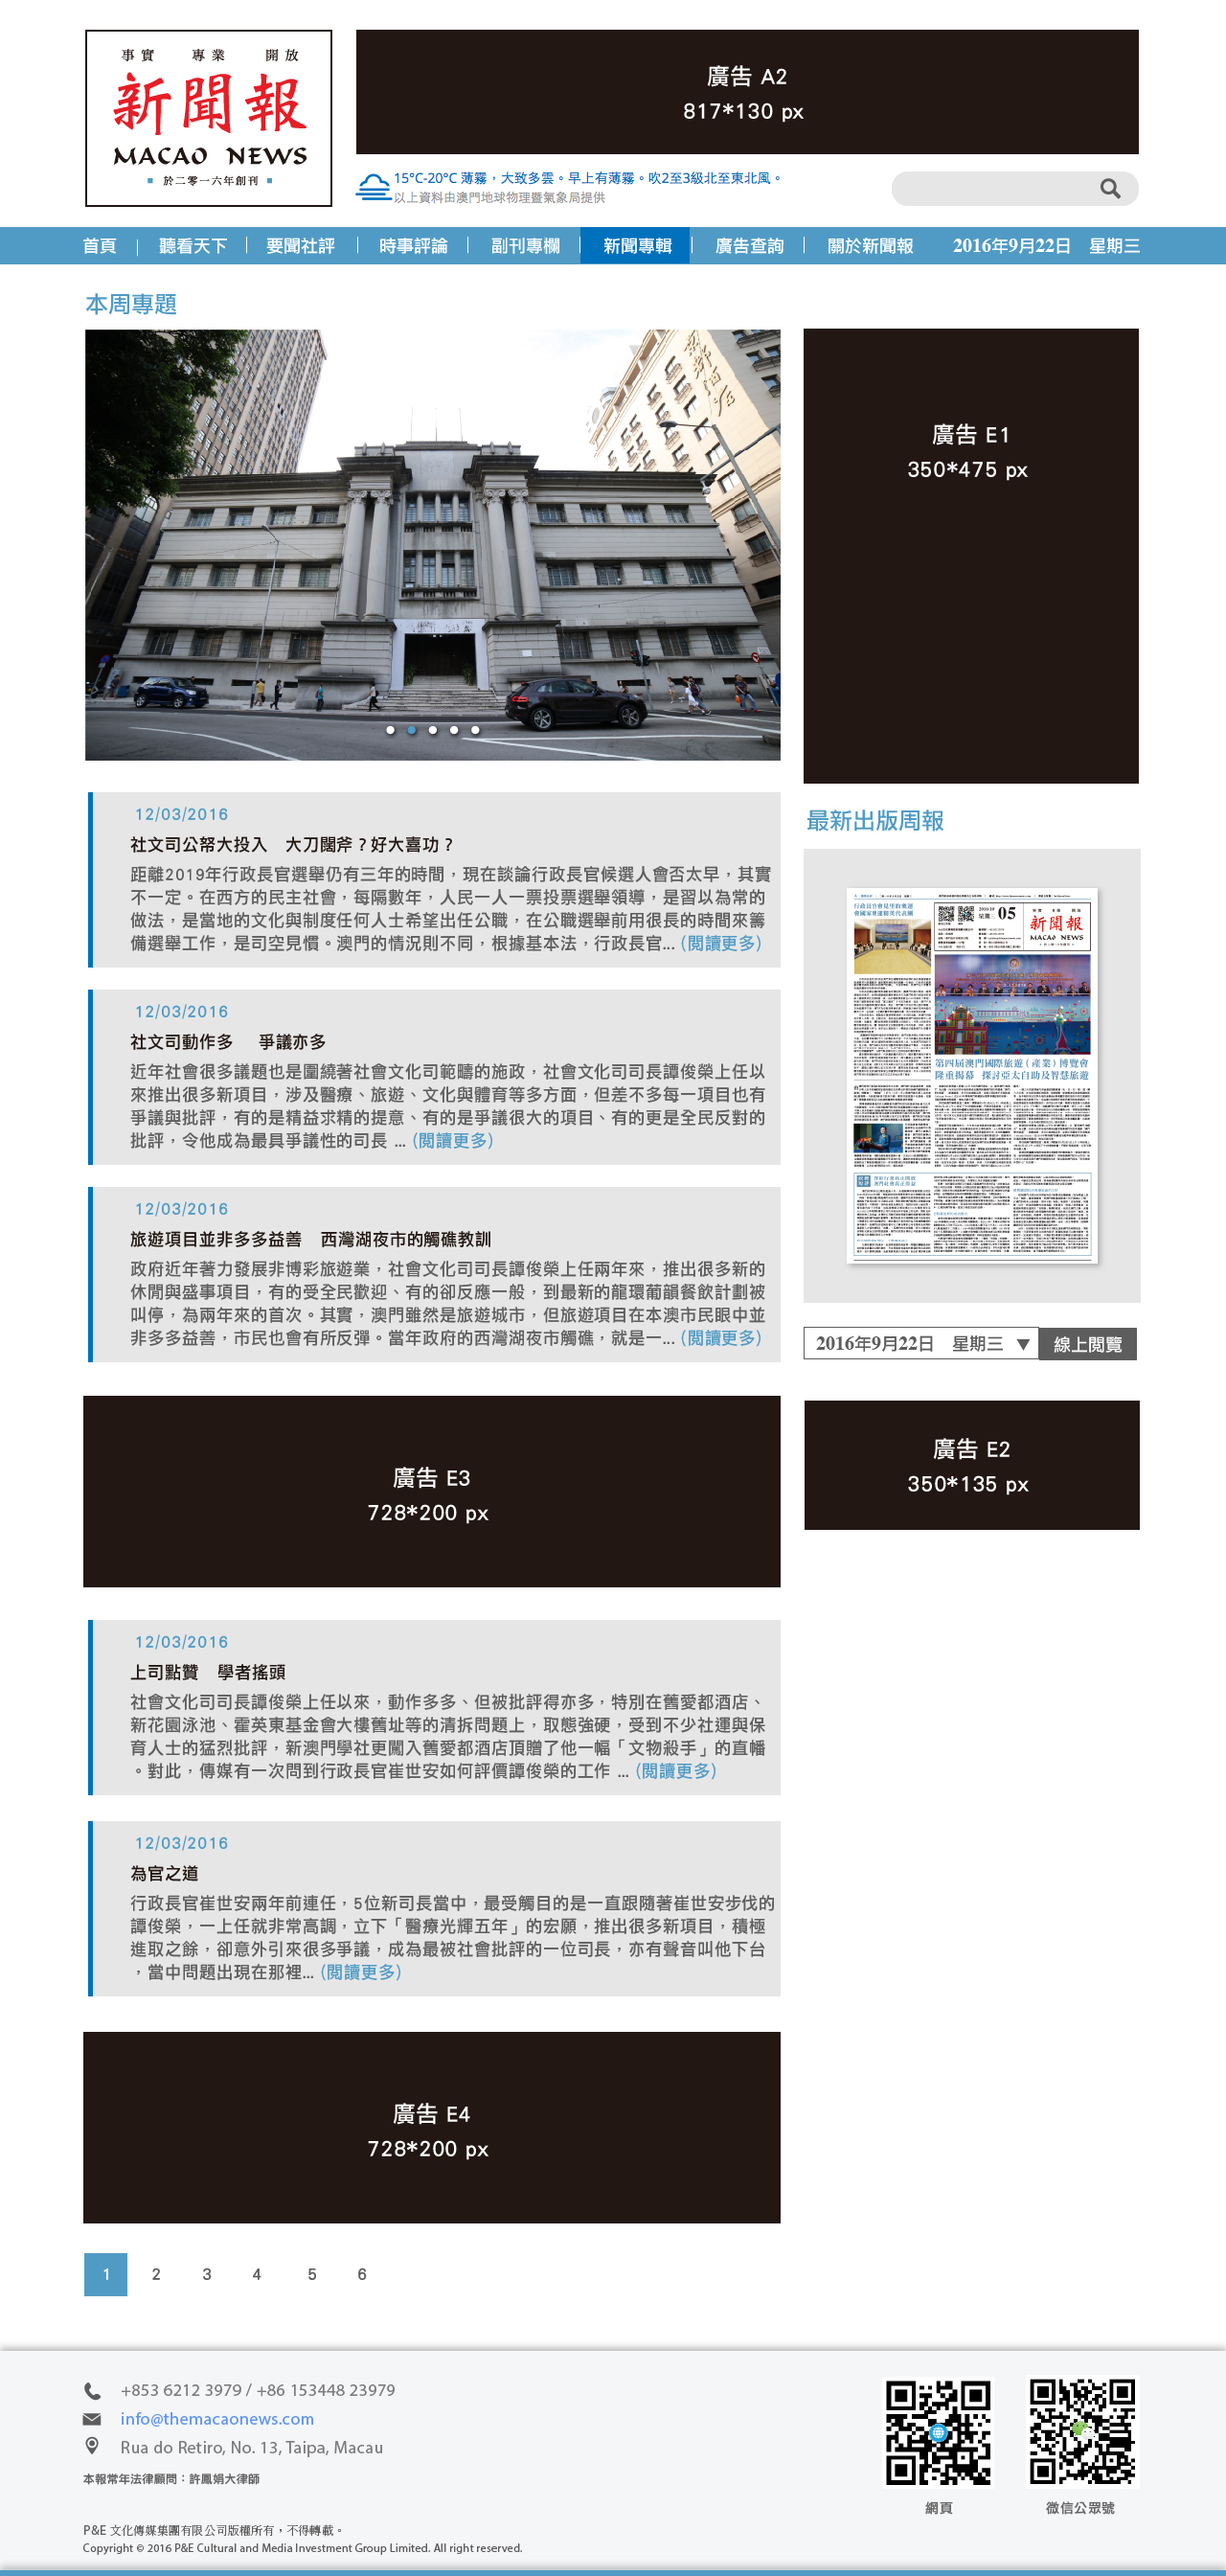 macao-news-website-ad-03